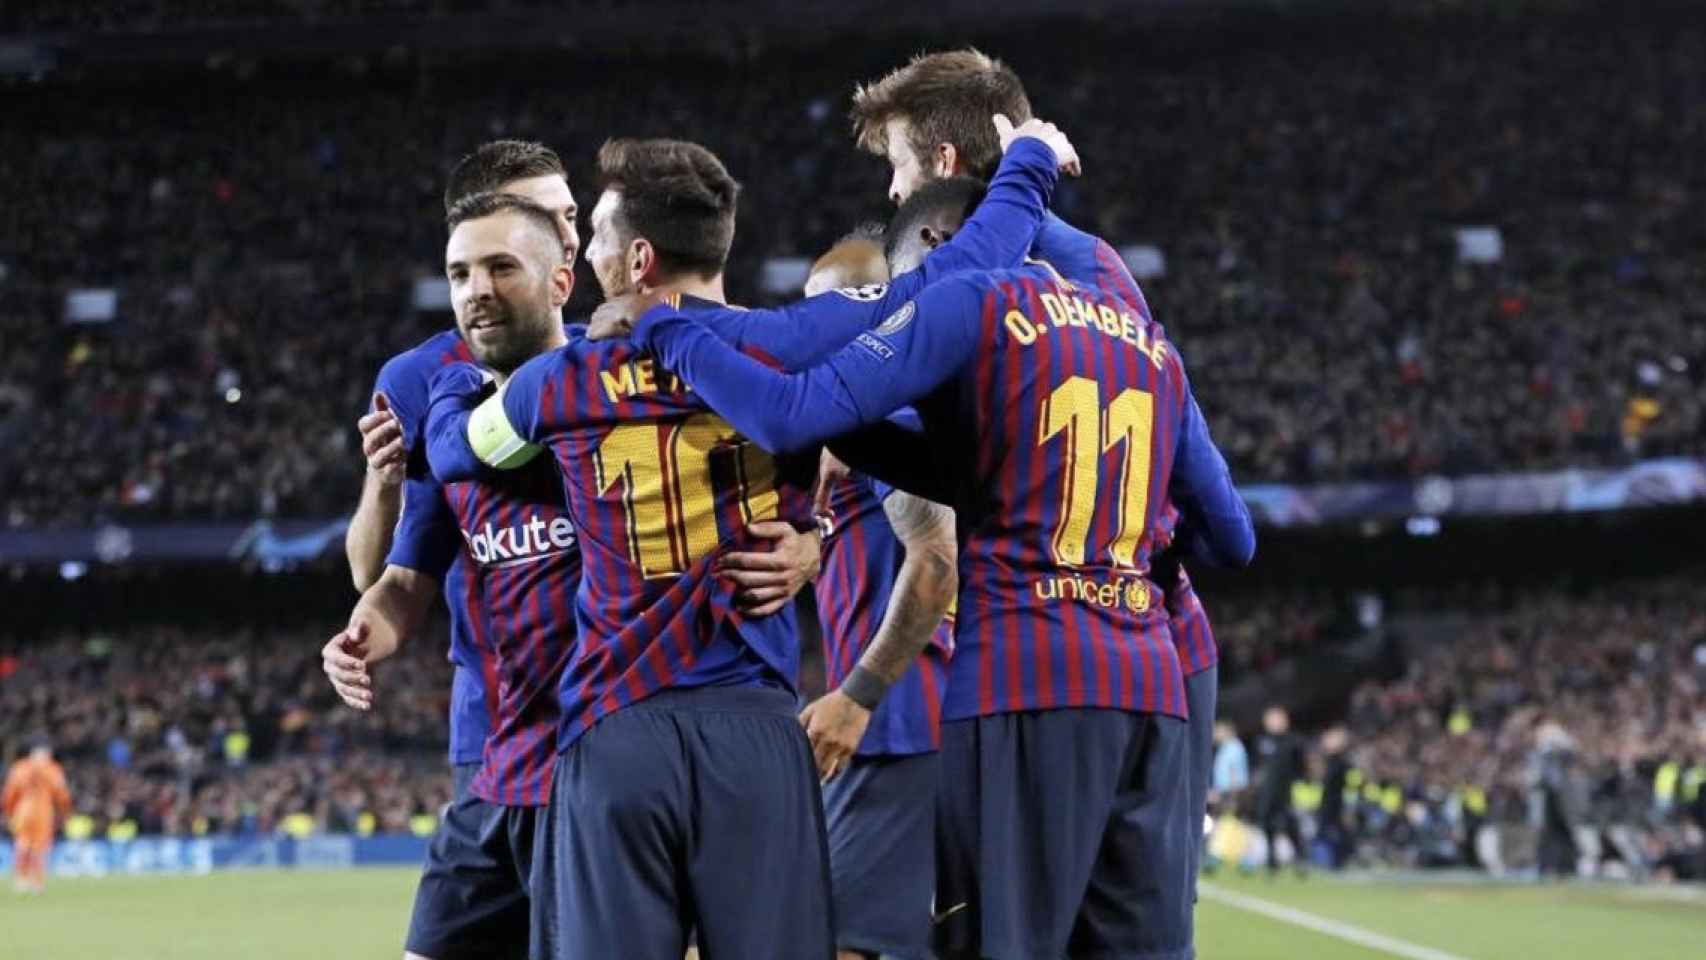 Una foto de los jugadores del Barça celebrando un gol ante el Olympique de Lyon / FCB